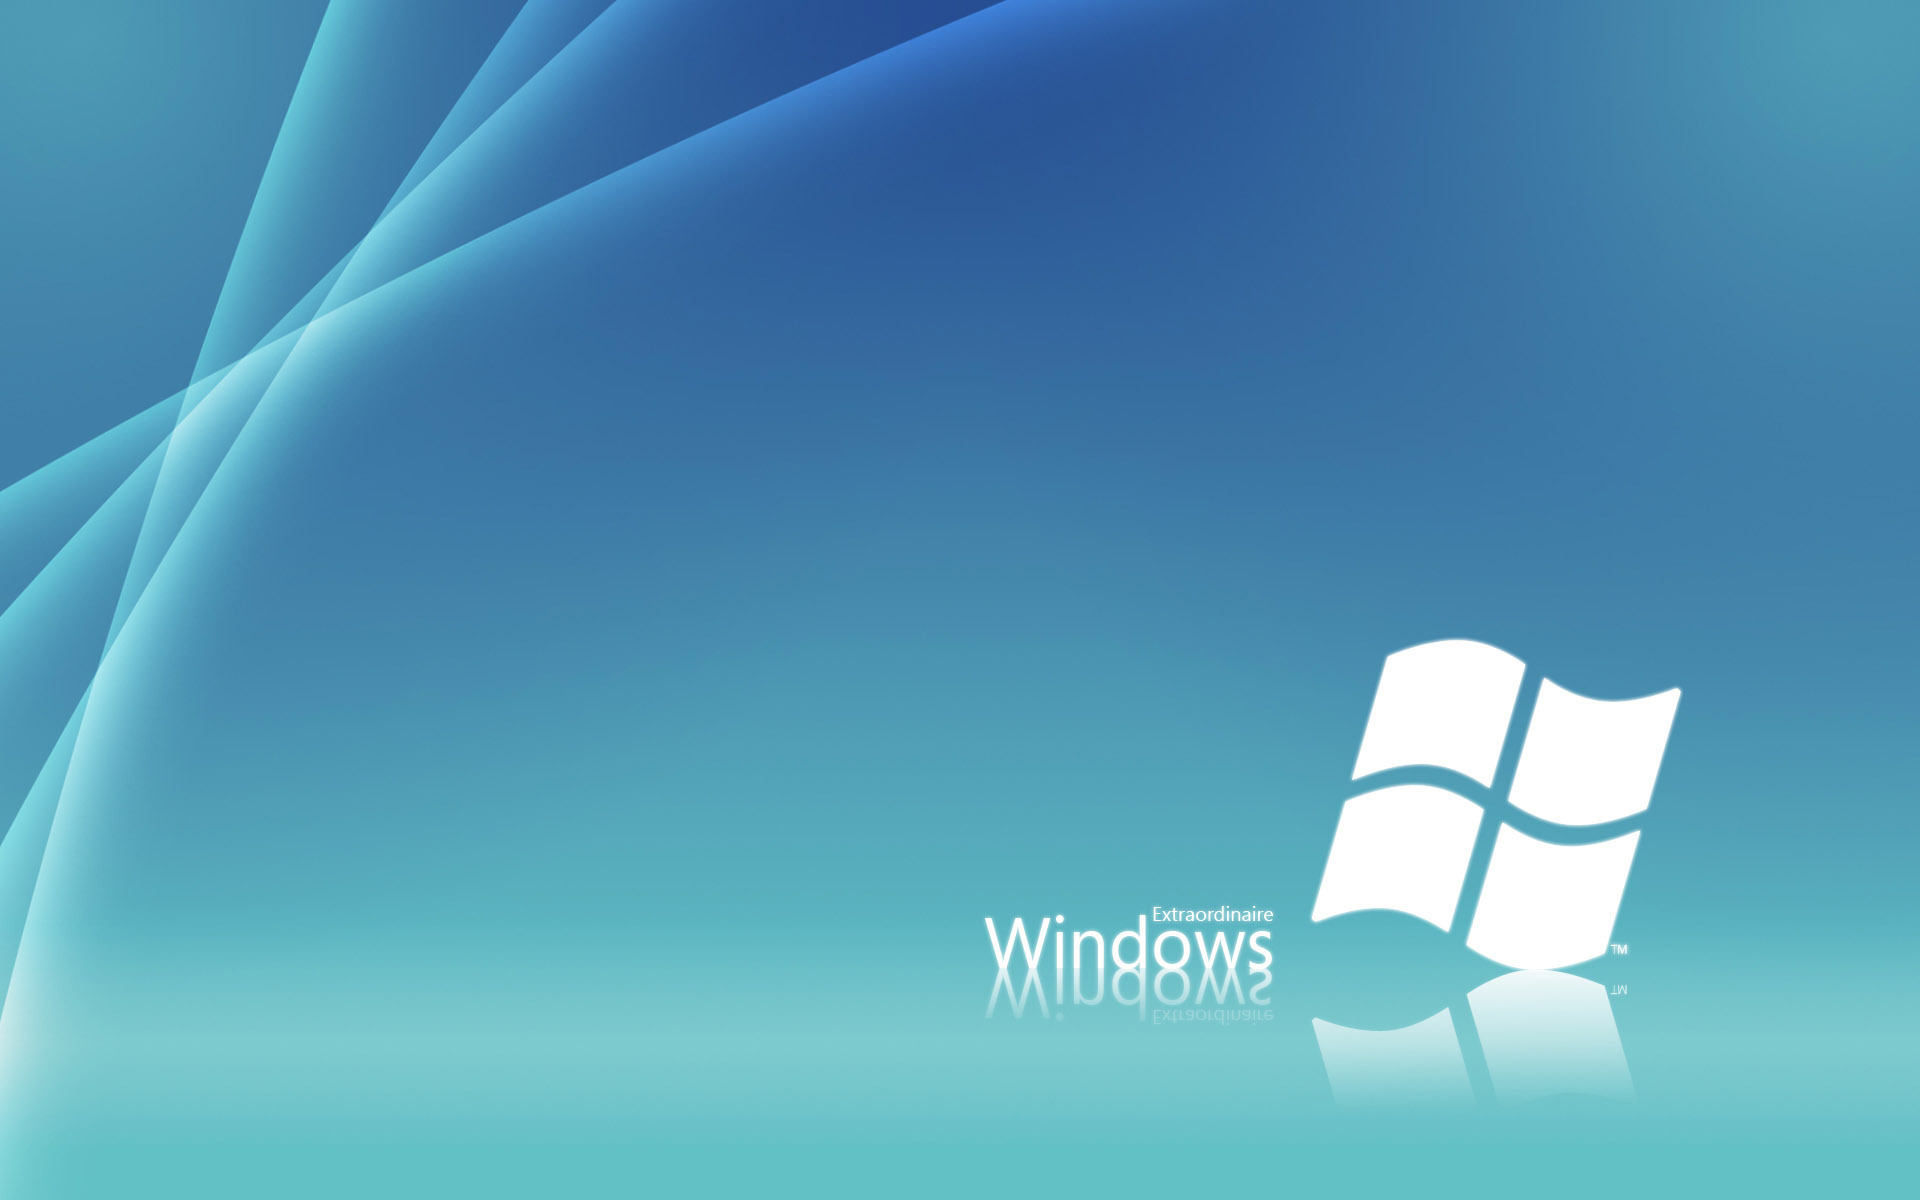 Windows - Blue Wallpaper 22256445 - Fanpop